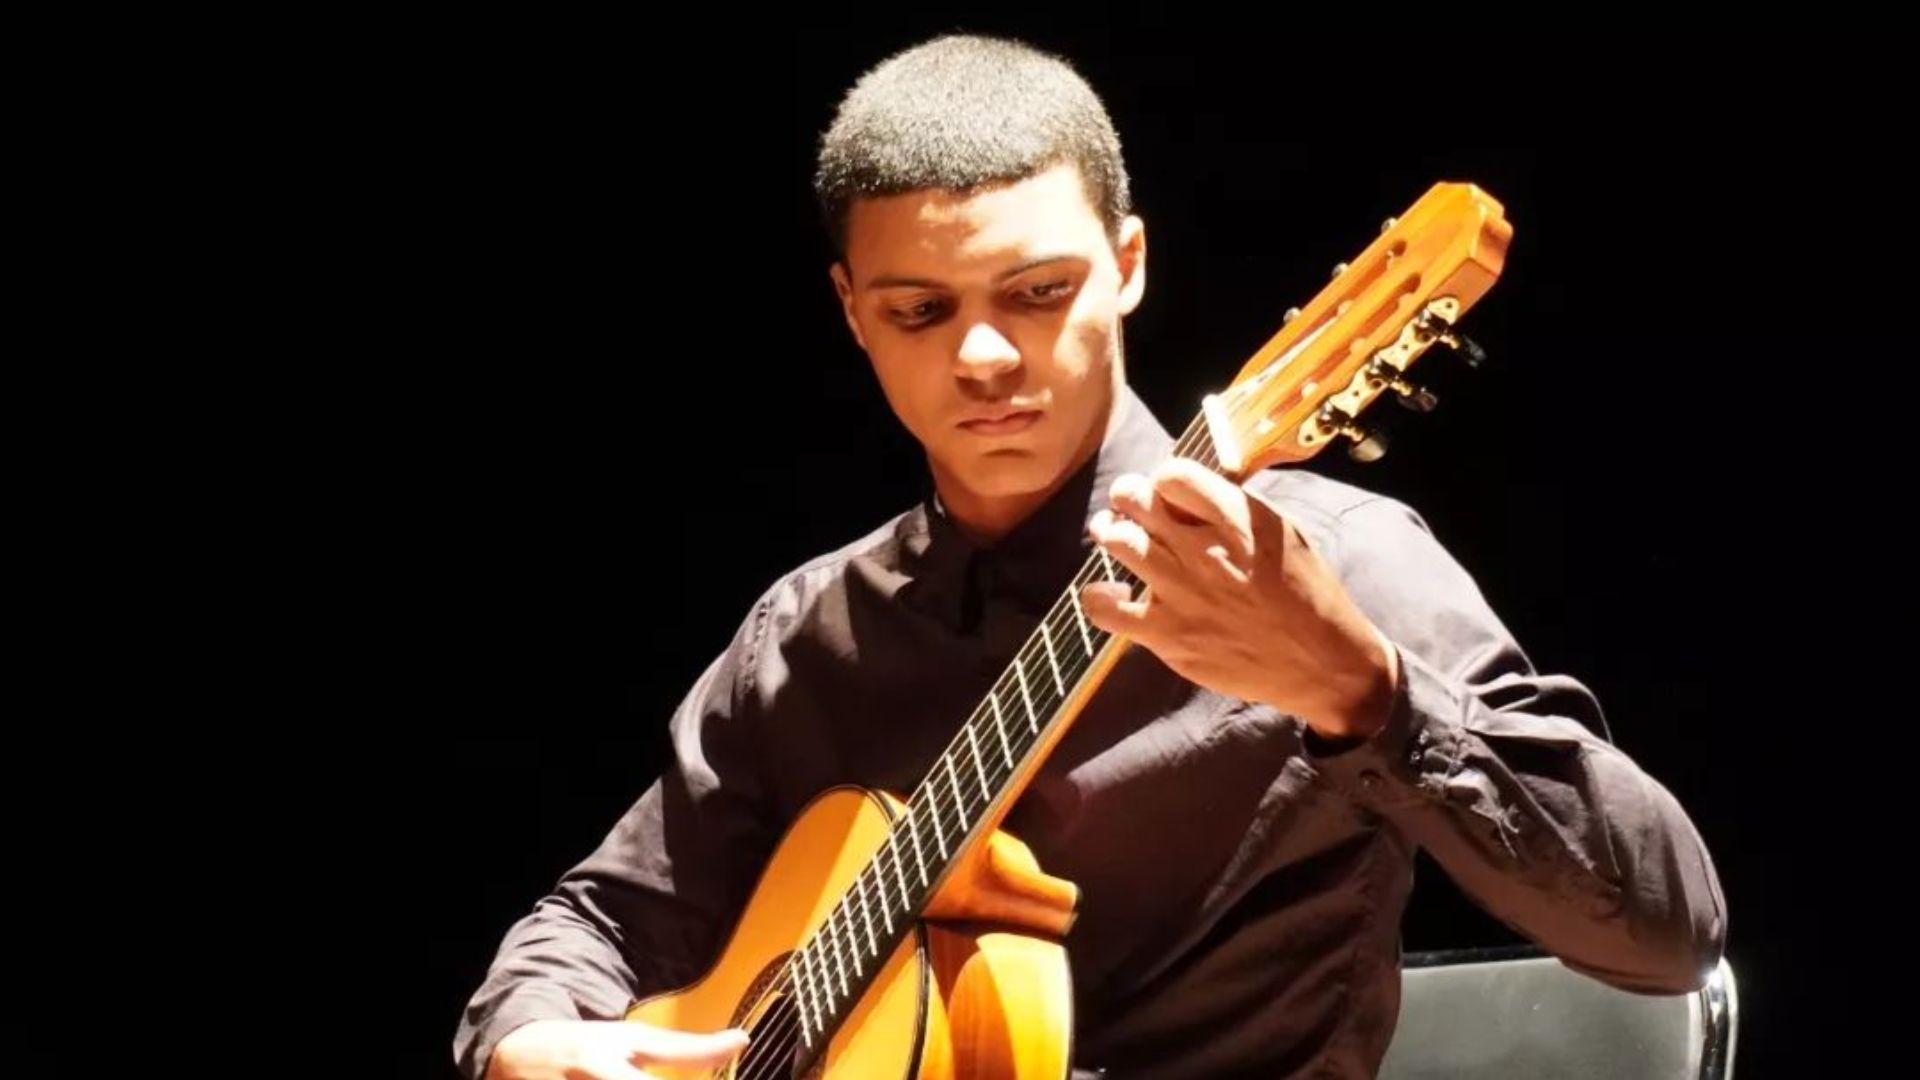 Formado na Fames, Lucas Souza (24) precisa arrecadar R$ 33 mil até a 1ª quinzena de setembro para conseguir estudar música clássica em Milão; veja como contribuir